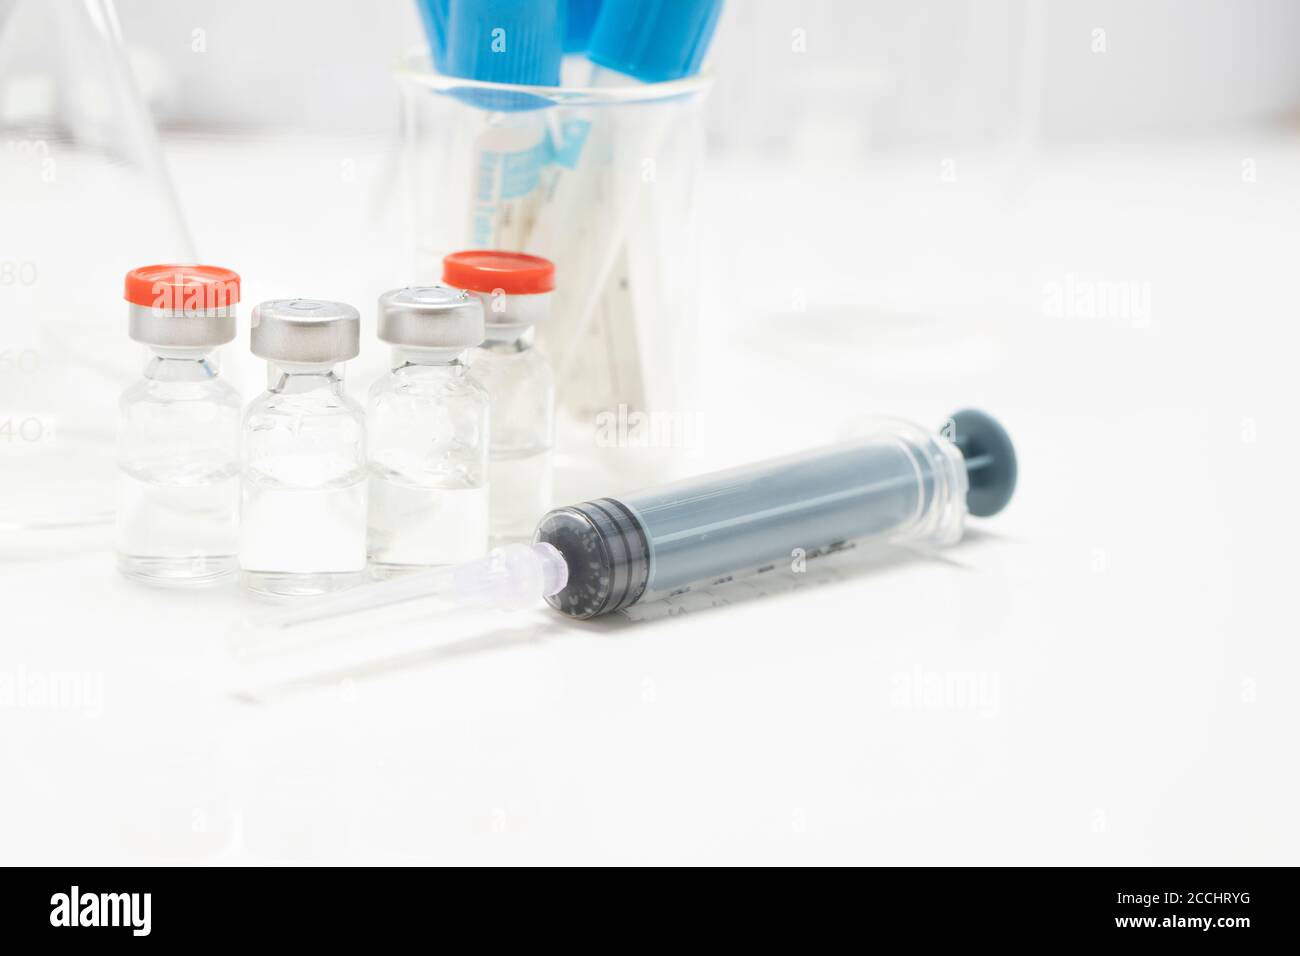 Medizinische Serie, Injektionsfläschchen Flaschen Stock Foto, Pandemic Serie Stockfoto